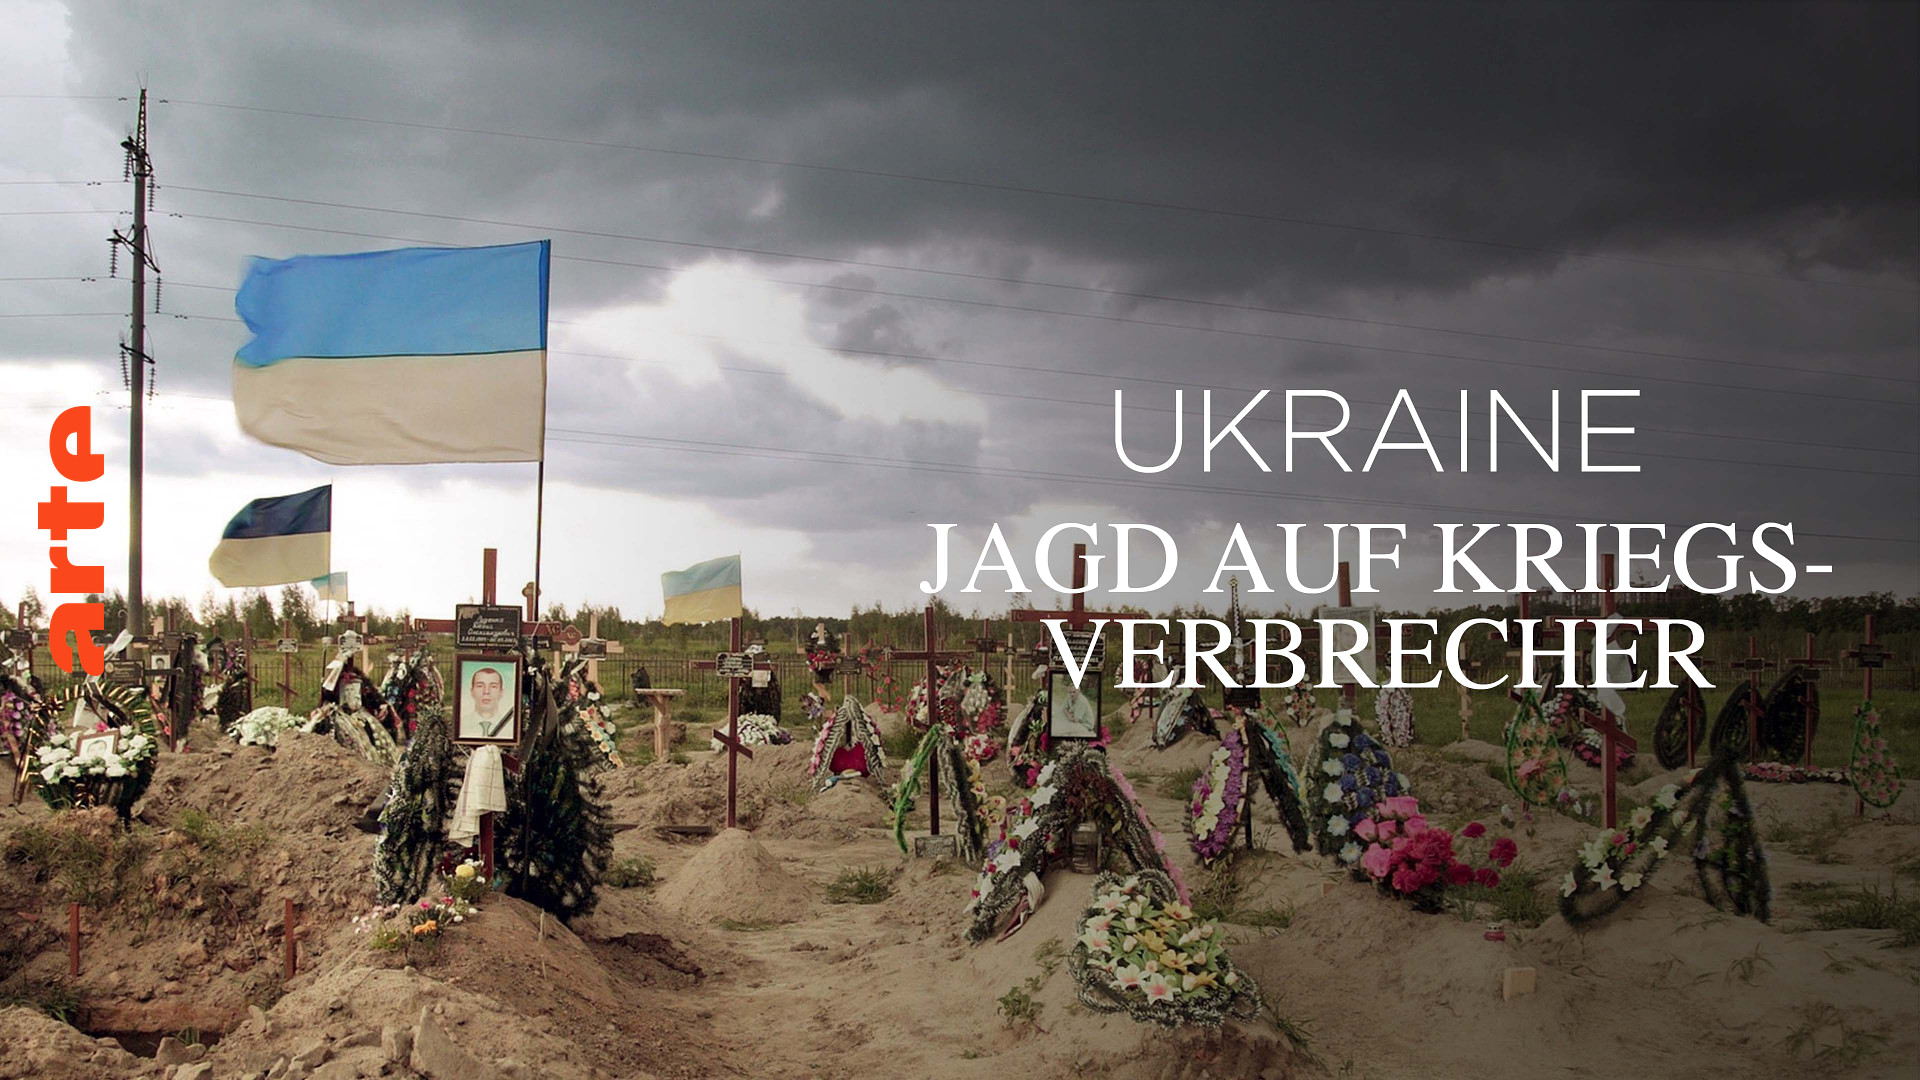 Ukraine: Jagd auf Kriegsverbrecher